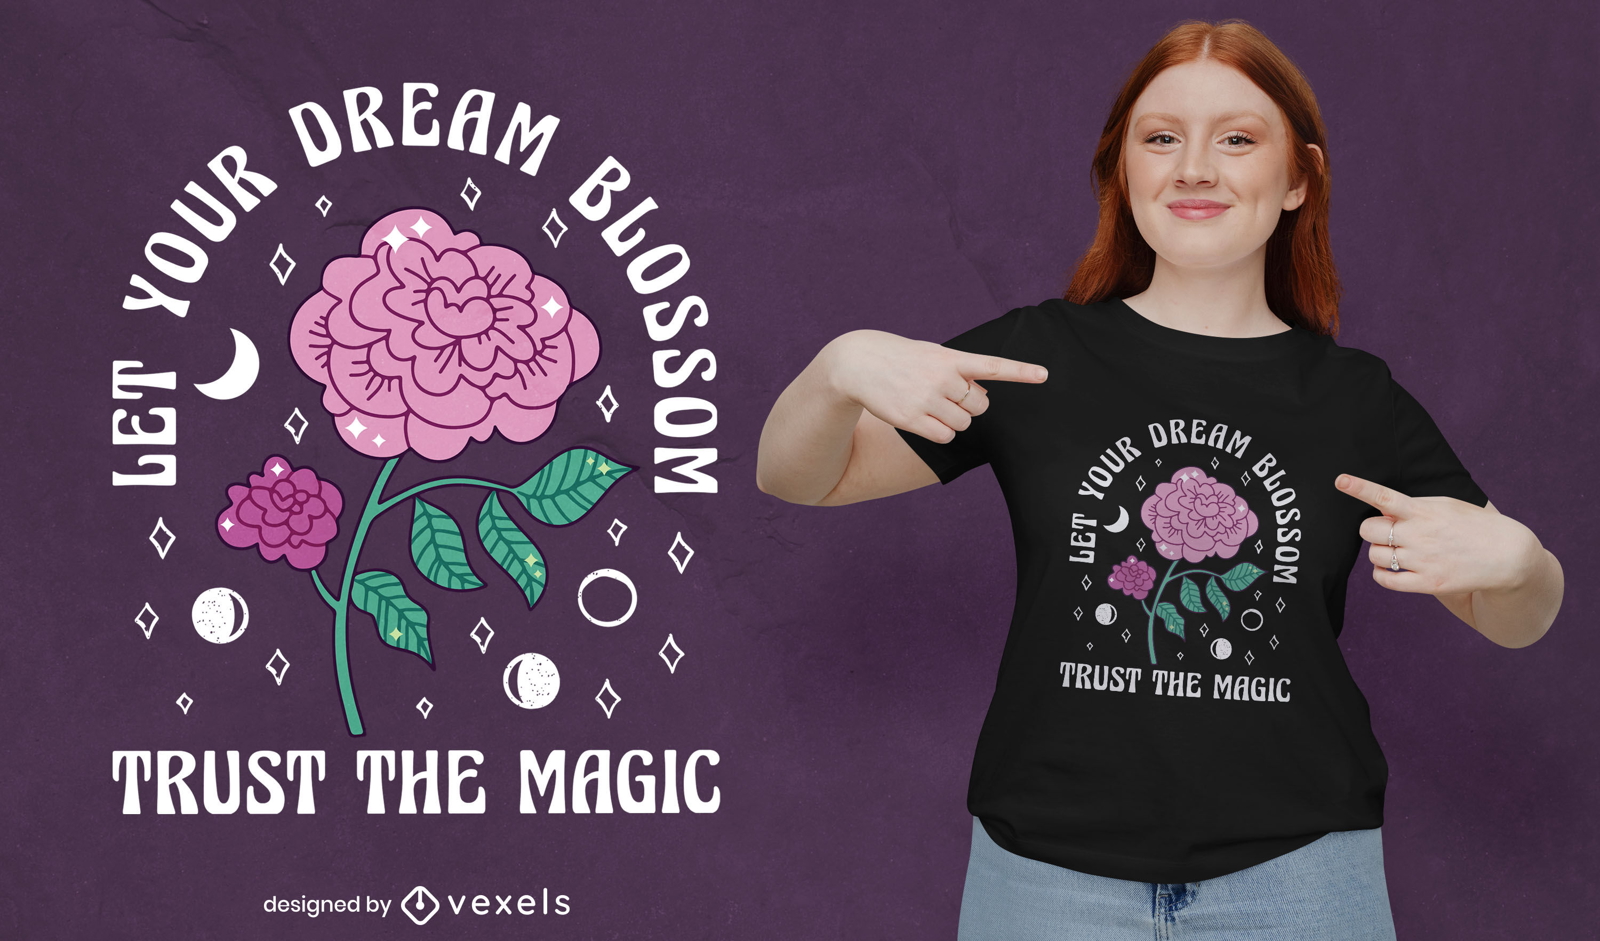 Magic rose dreams come true t-shirt design